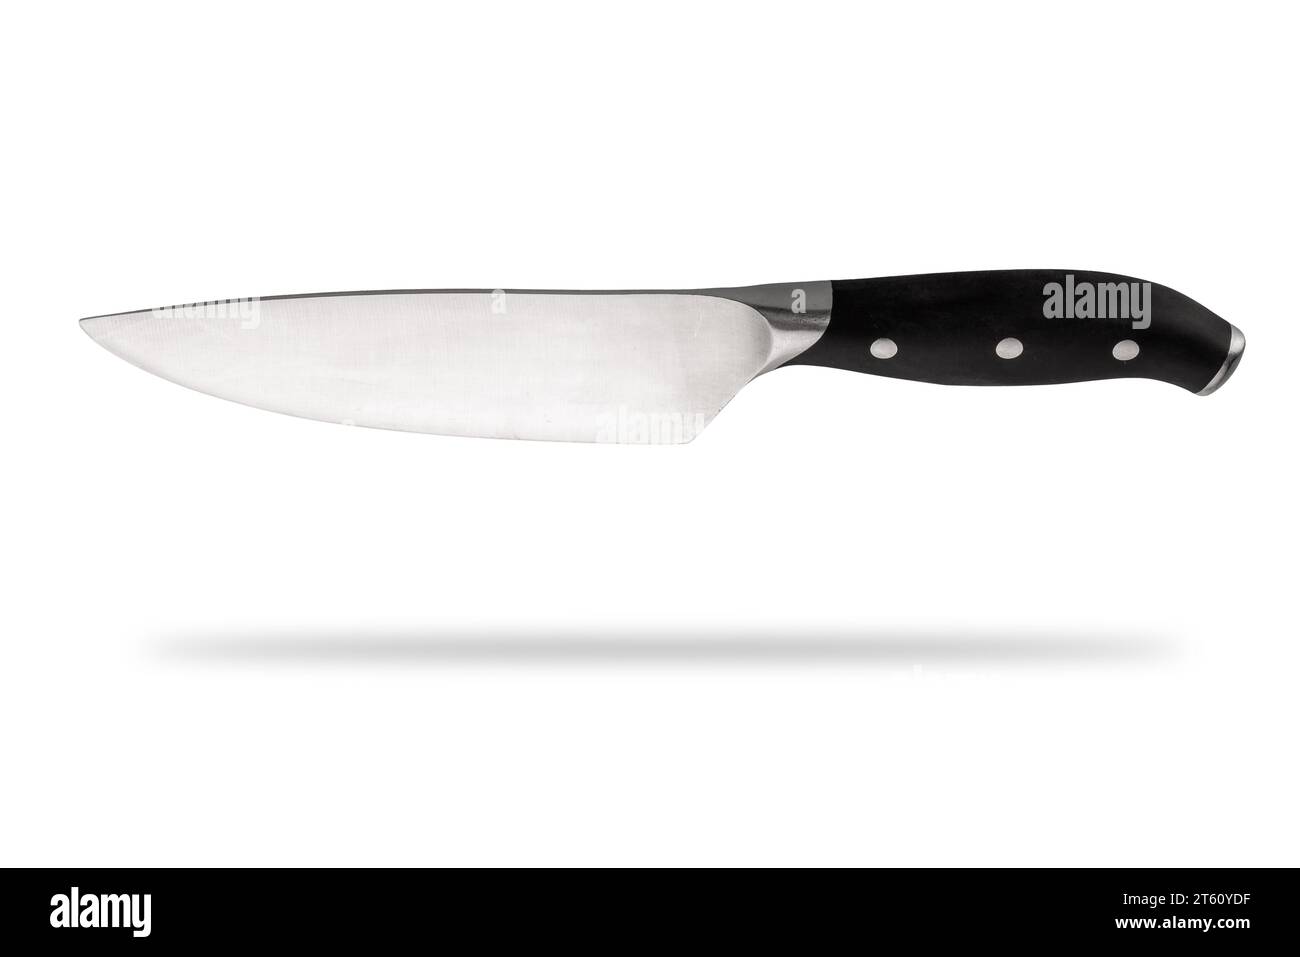 Cocina o cuchillo de chef aislado en blanco con recorte de ruta incluido Foto de stock